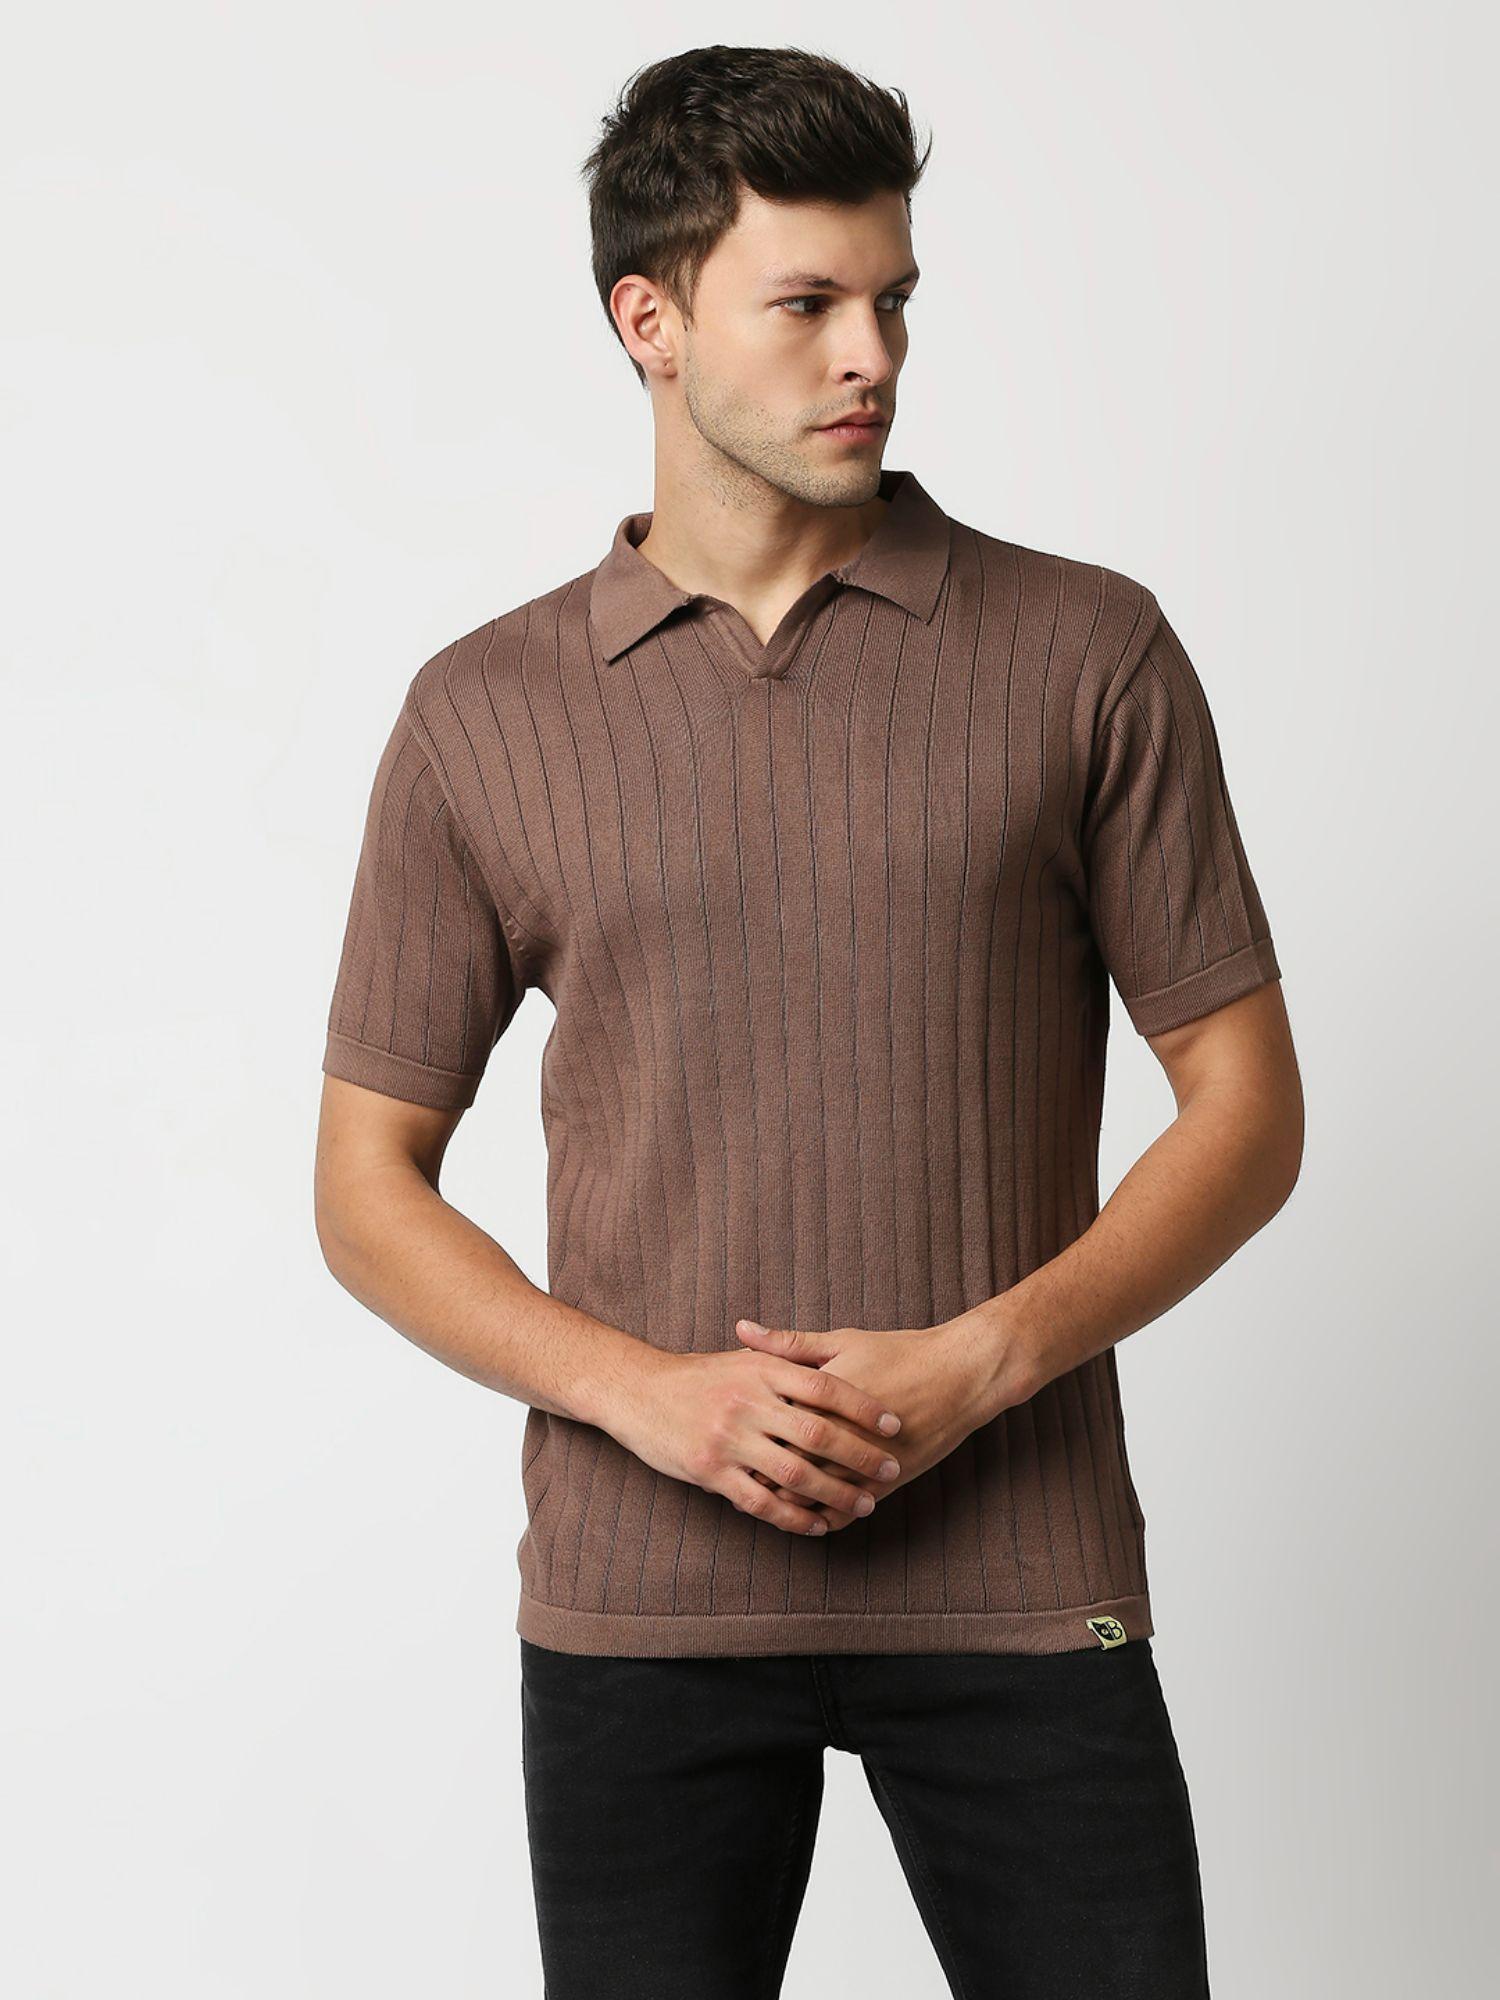 mens brown flat knit short sleeves slim fit polo tshirt